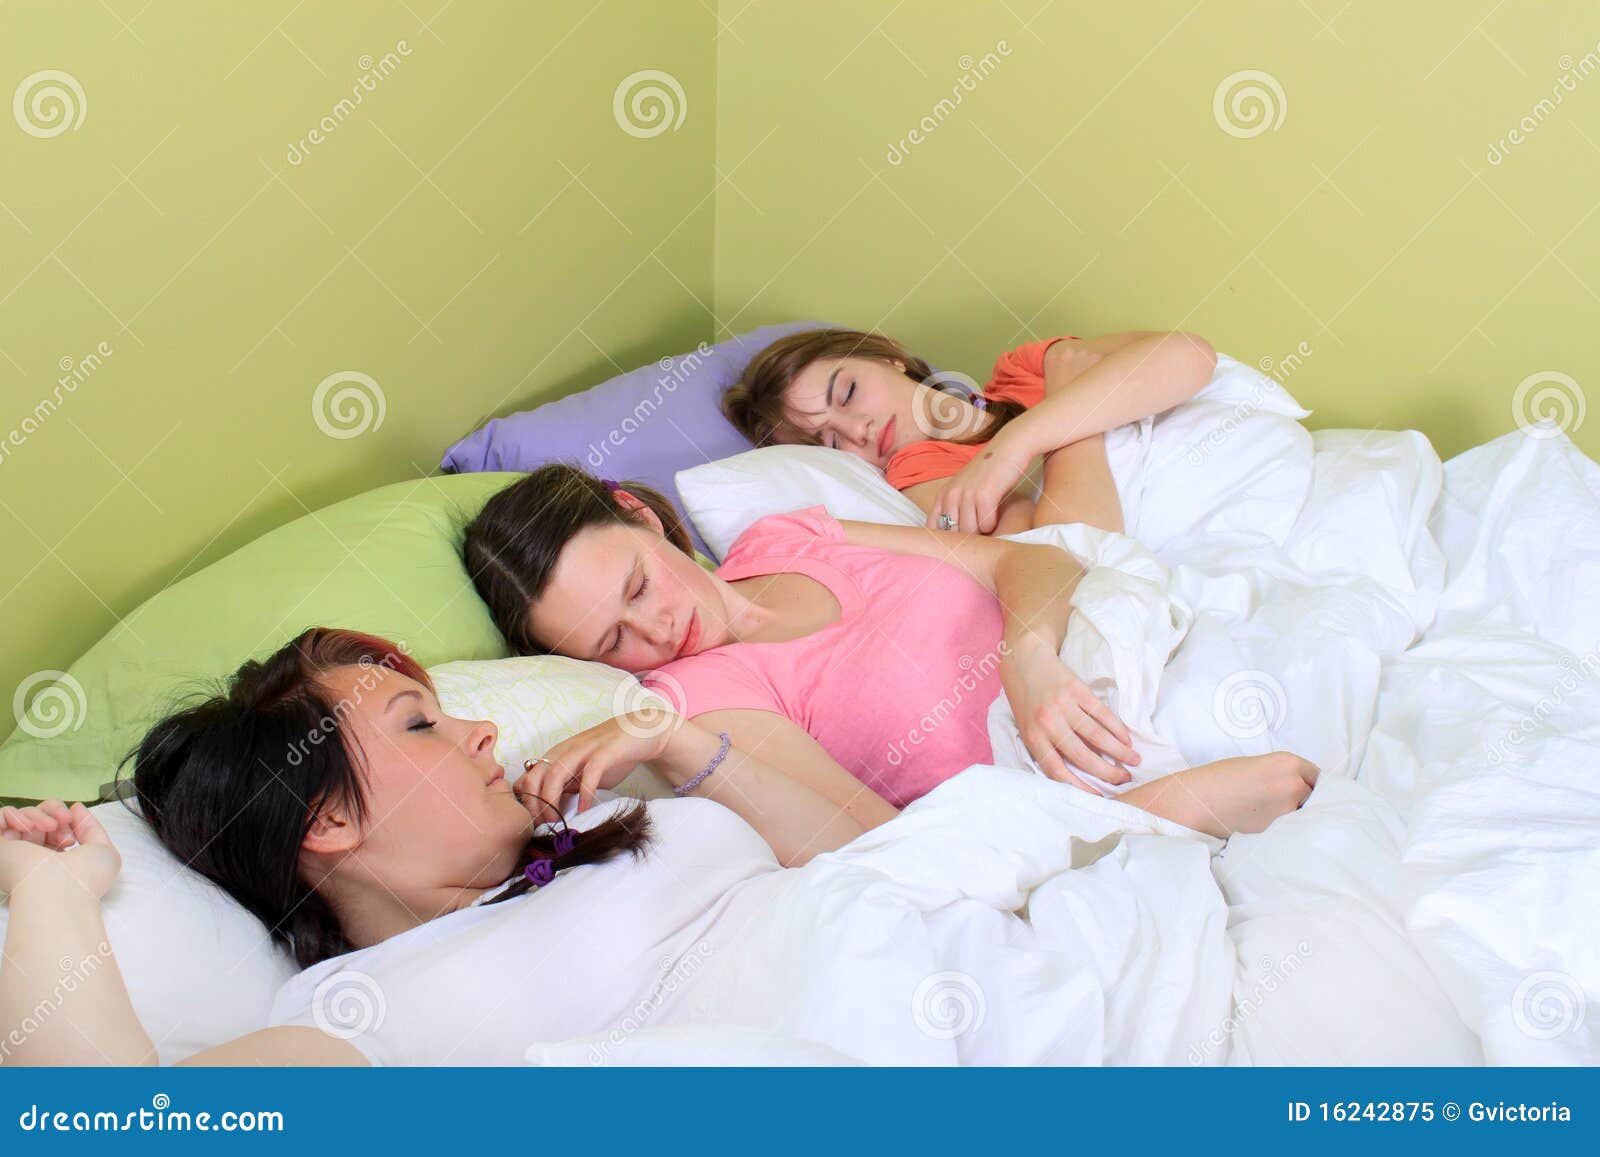 Лижет спящей мачехе. Две девушки в кровати. Спящие подруги. Девушки спать два.